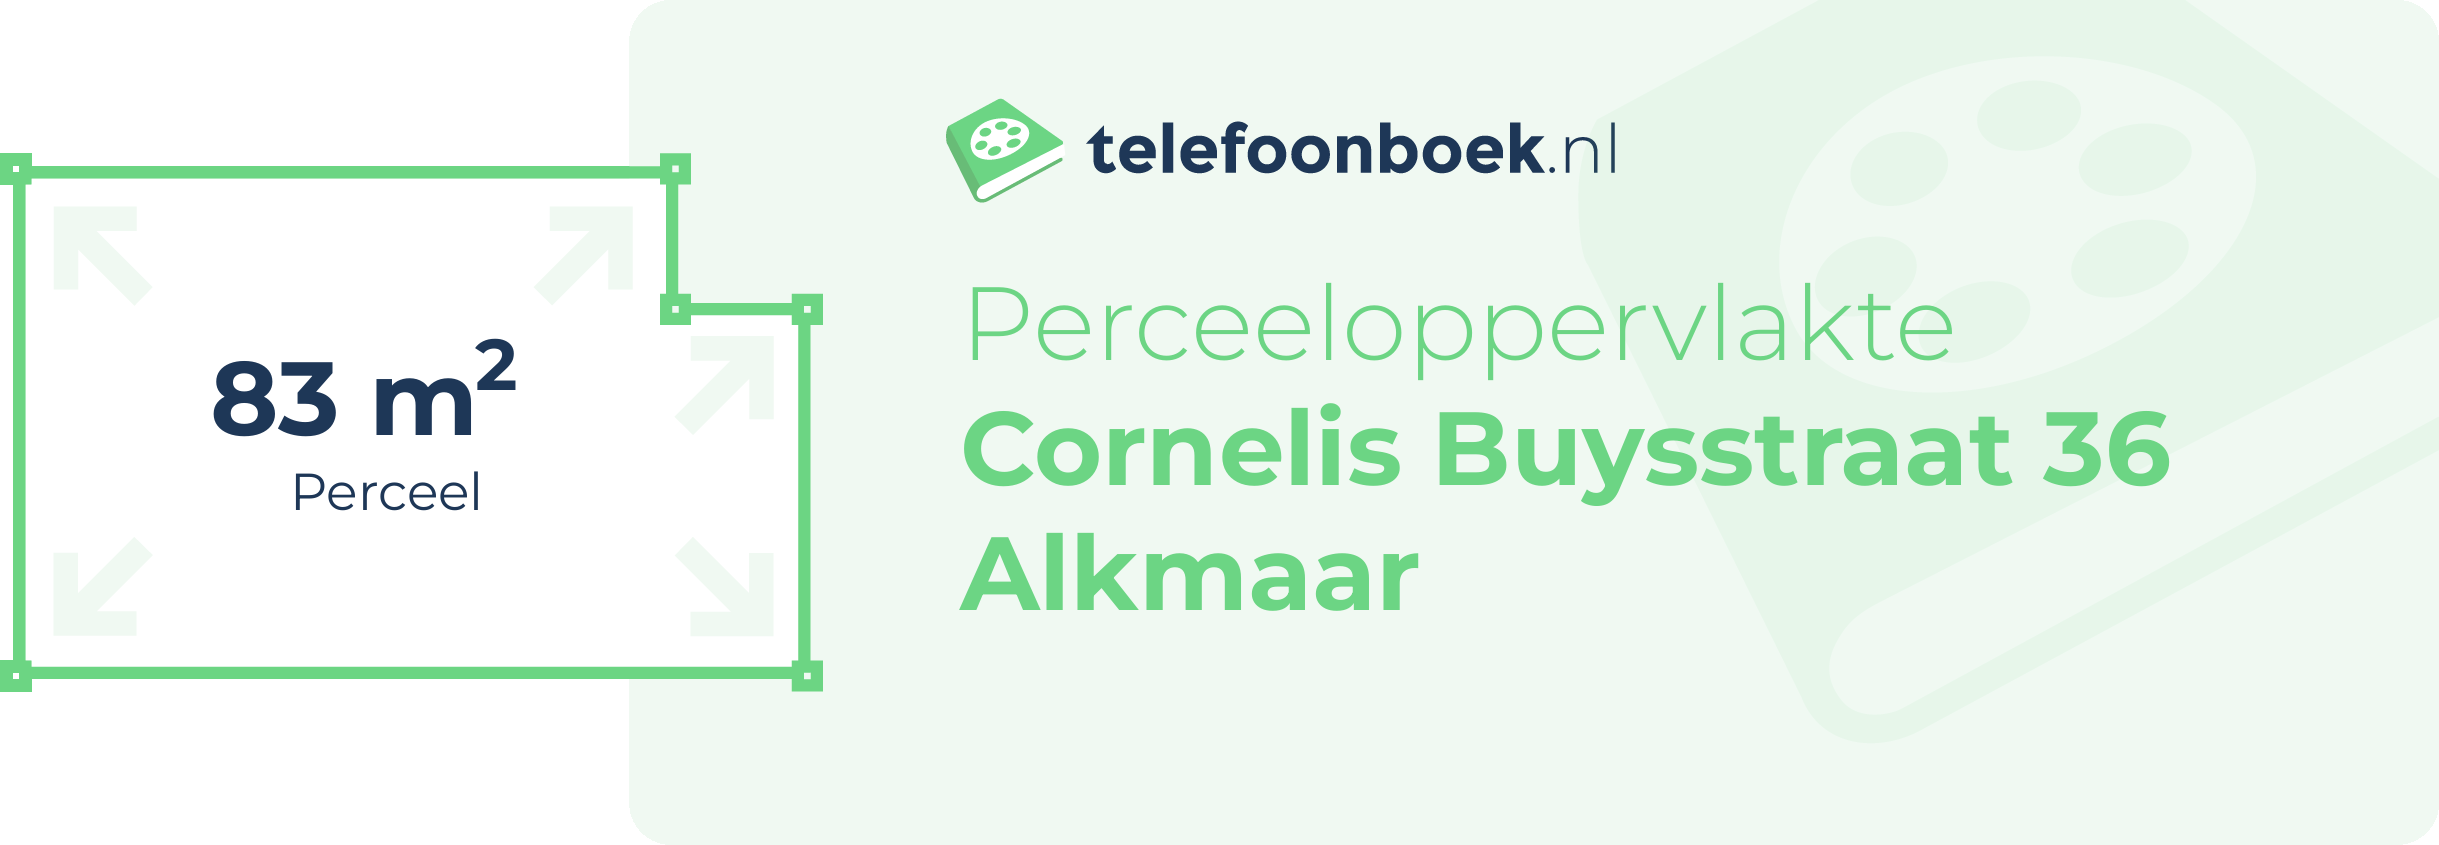 Perceeloppervlakte Cornelis Buysstraat 36 Alkmaar